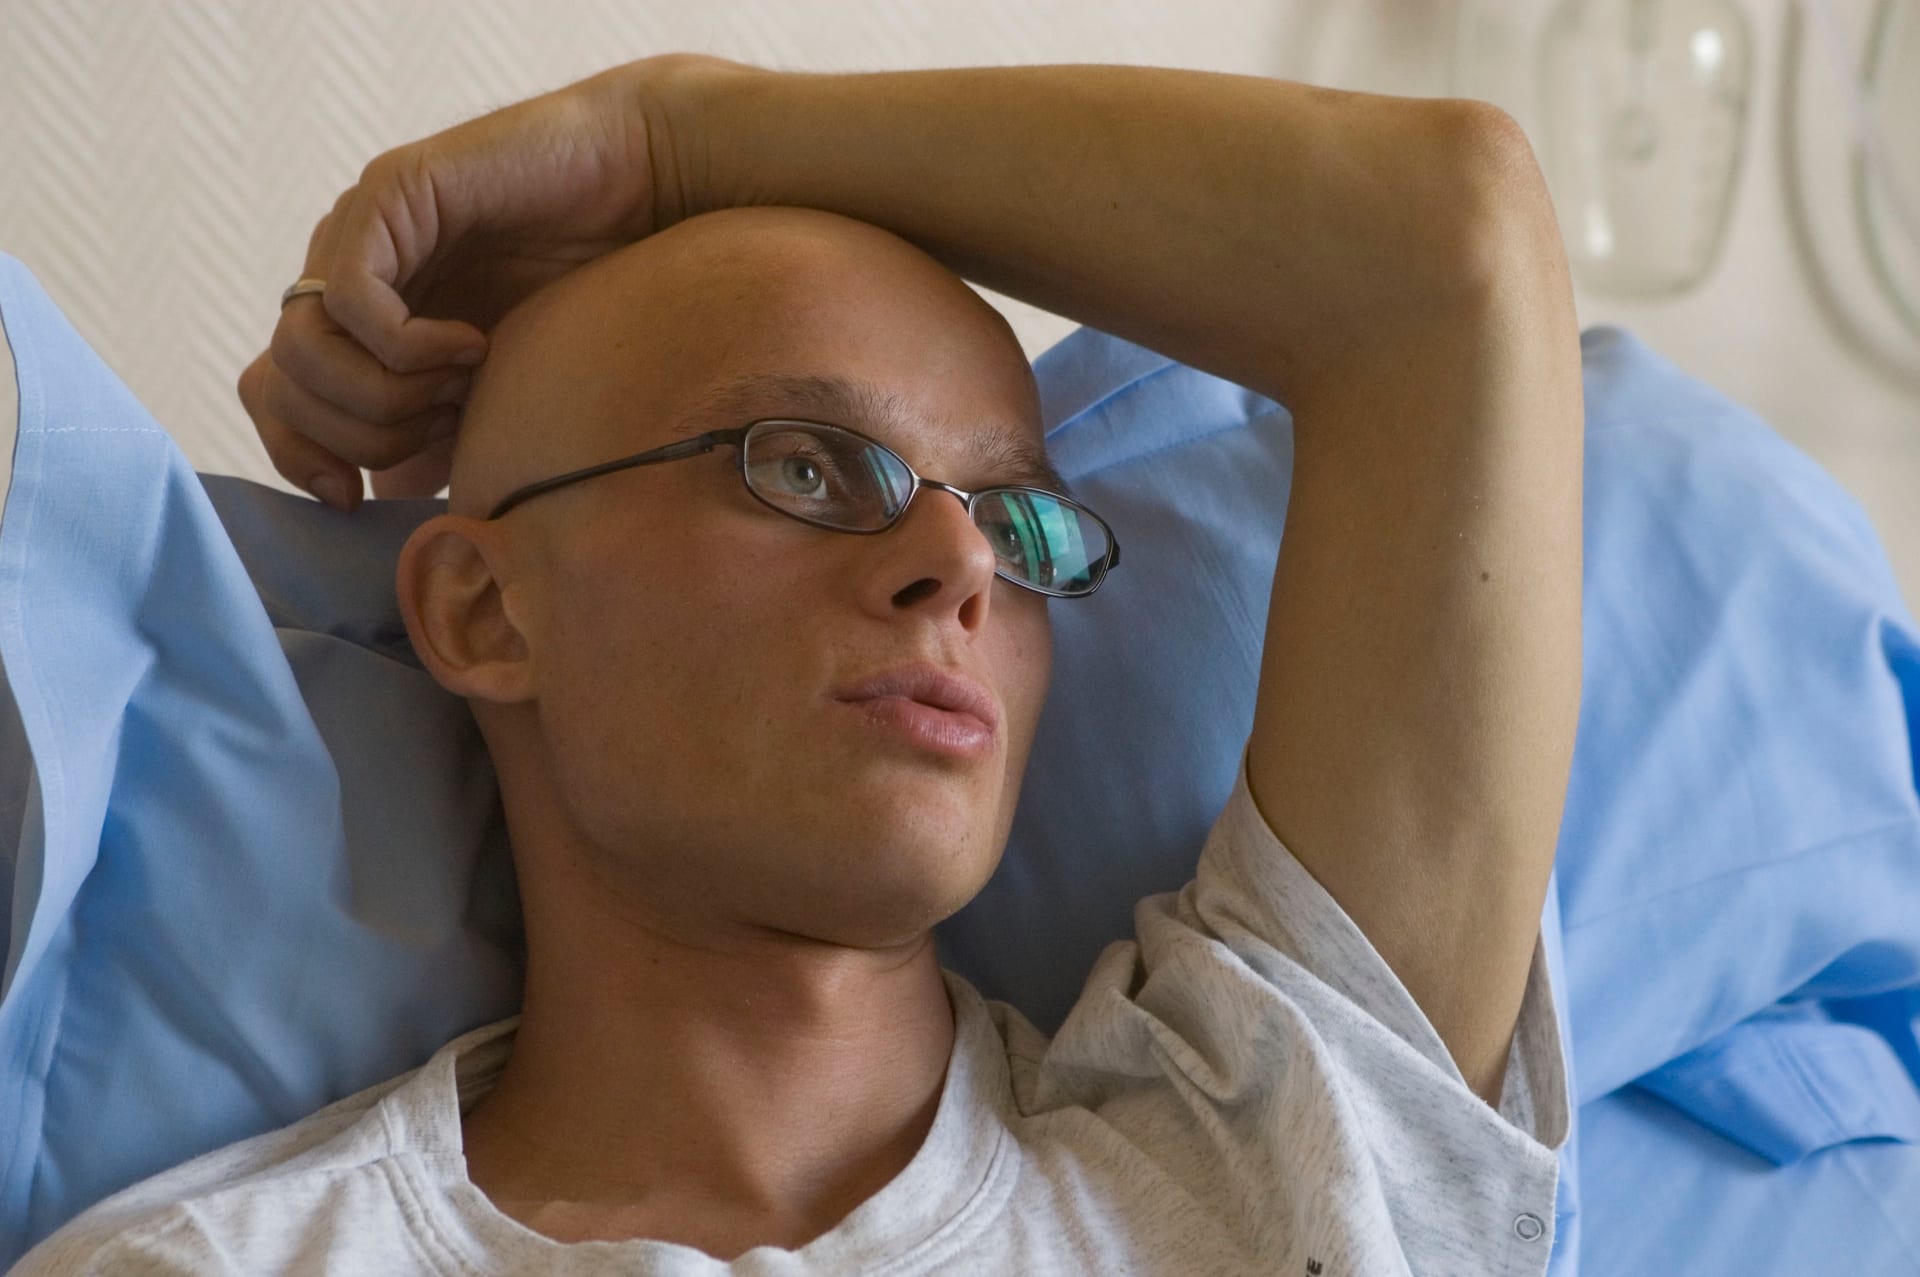 Rakovina může postihnout každého z nás. Ročně si diagnózu vyslechne až 87 tisíc lidí v Česku. (Ilustrační foto)